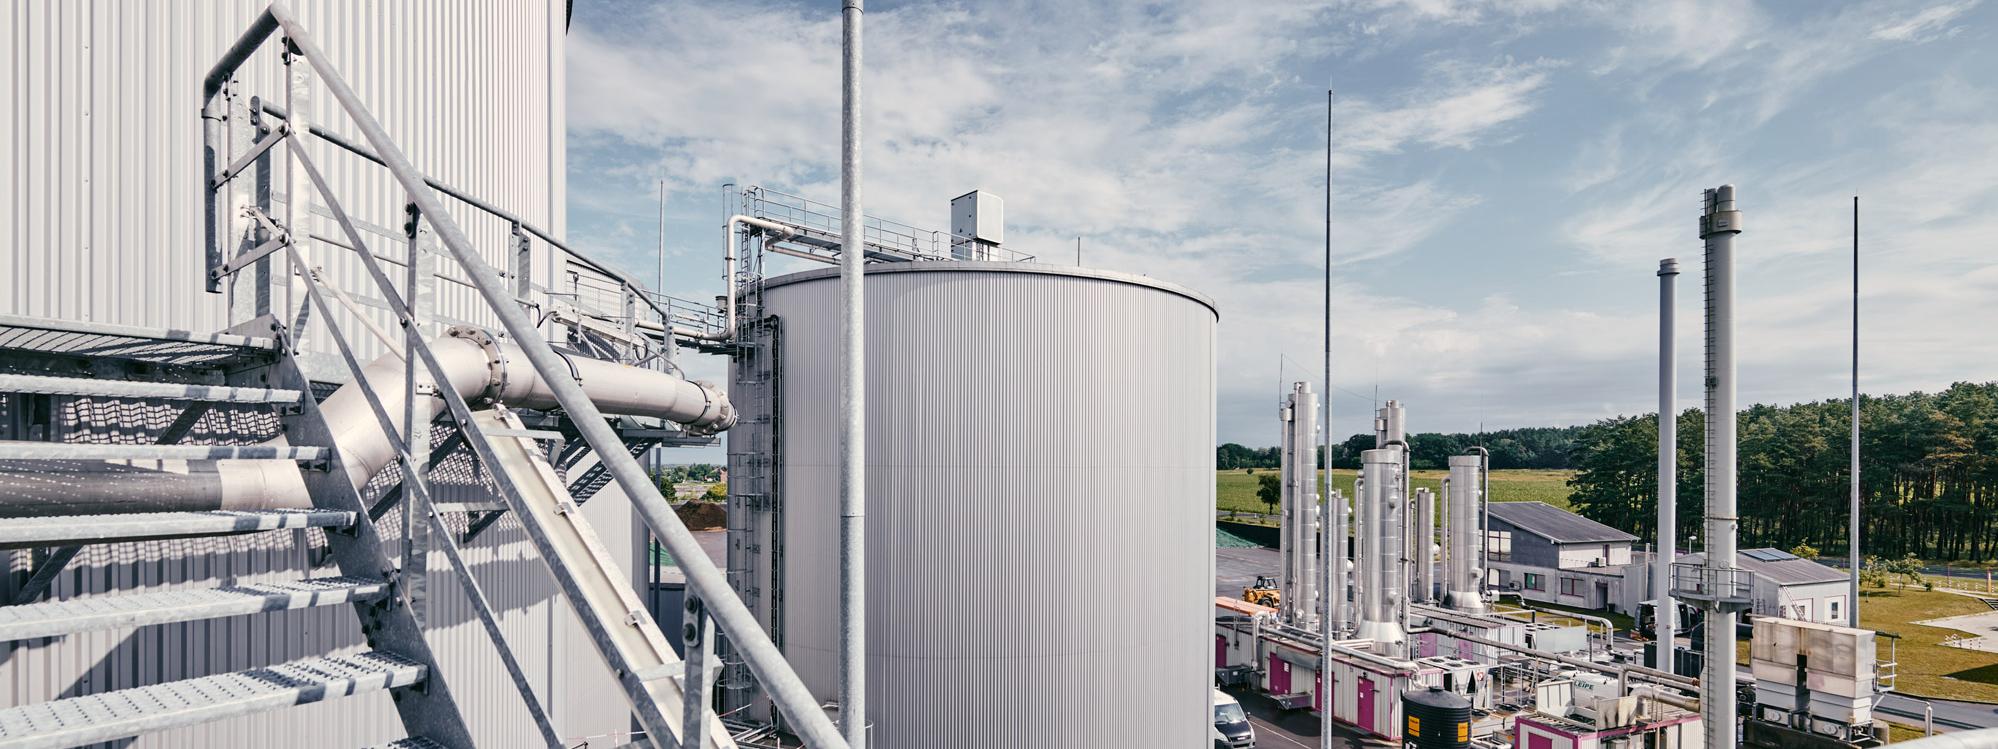 Biogasanlage Satuelle der BALANCE Erneuerbaren Energien GmbH